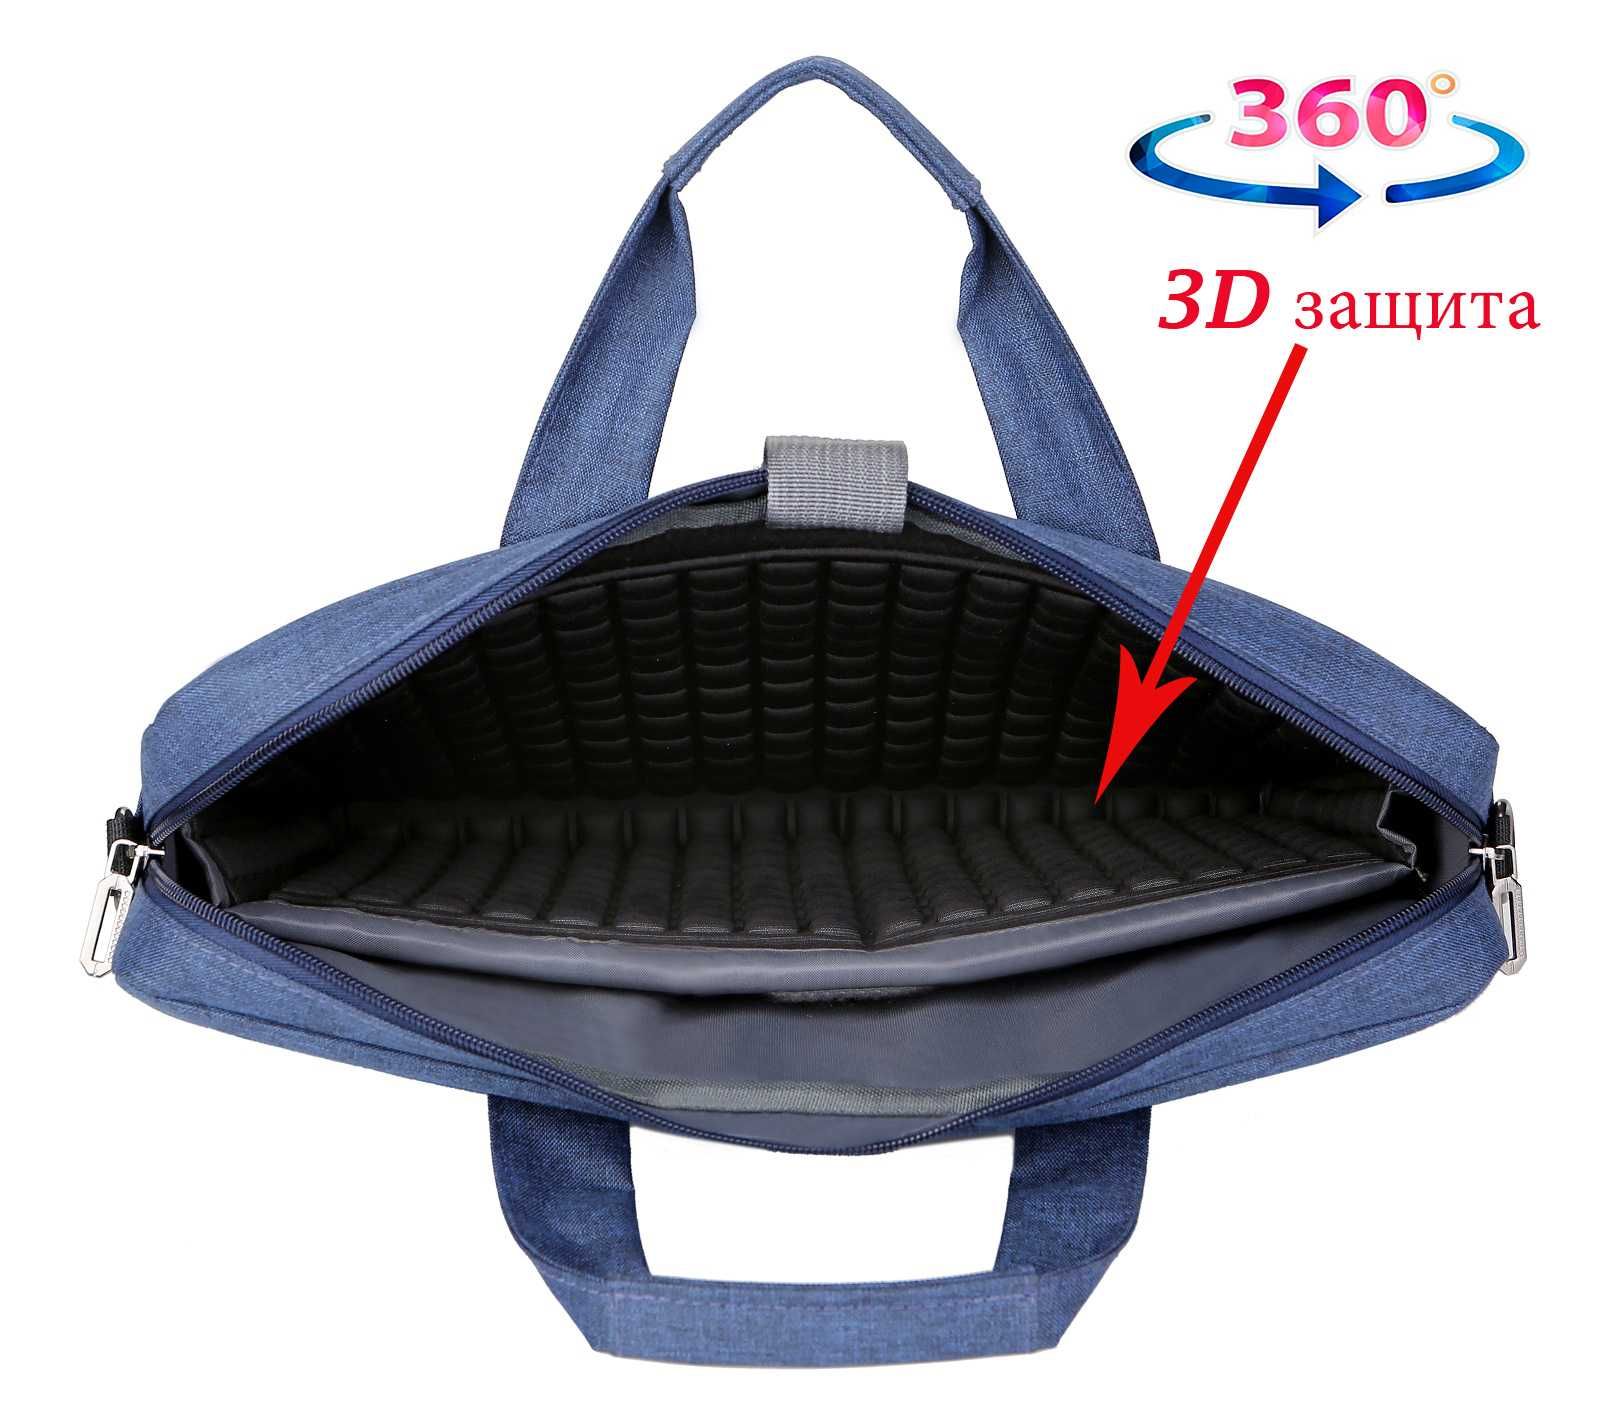 сумка с защитой 3D